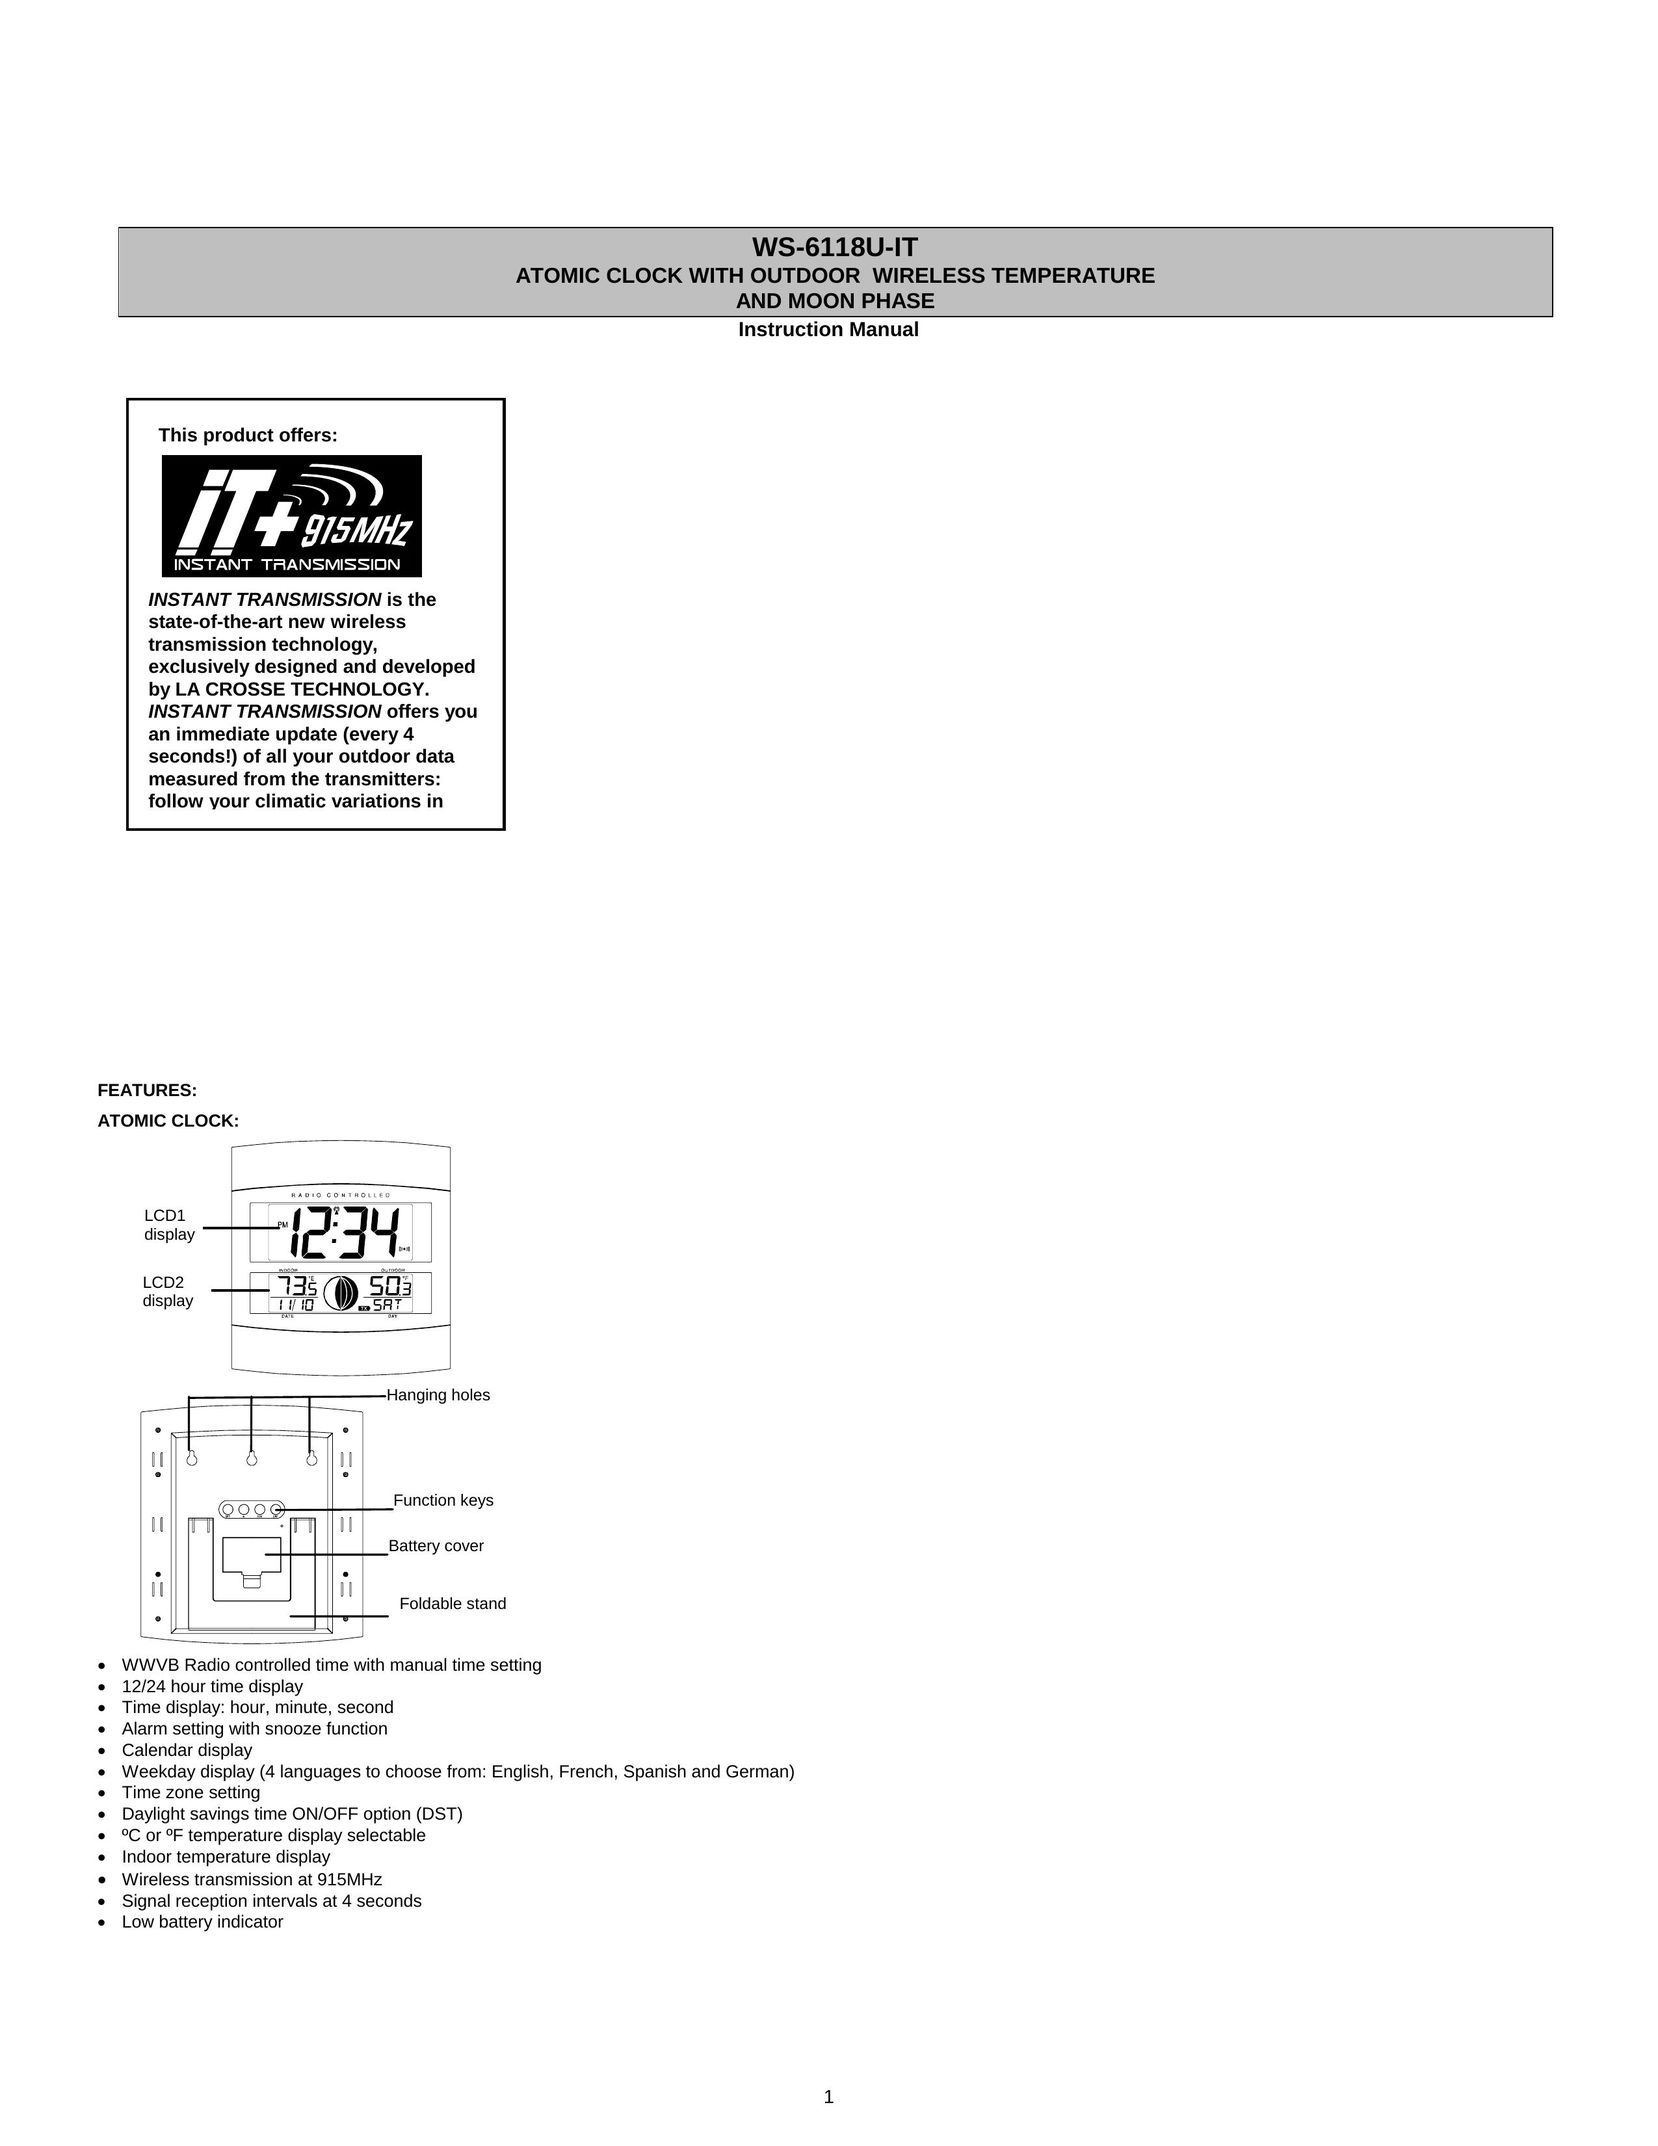 La Crosse Technology WS-6118AL-IT Clock User Manual